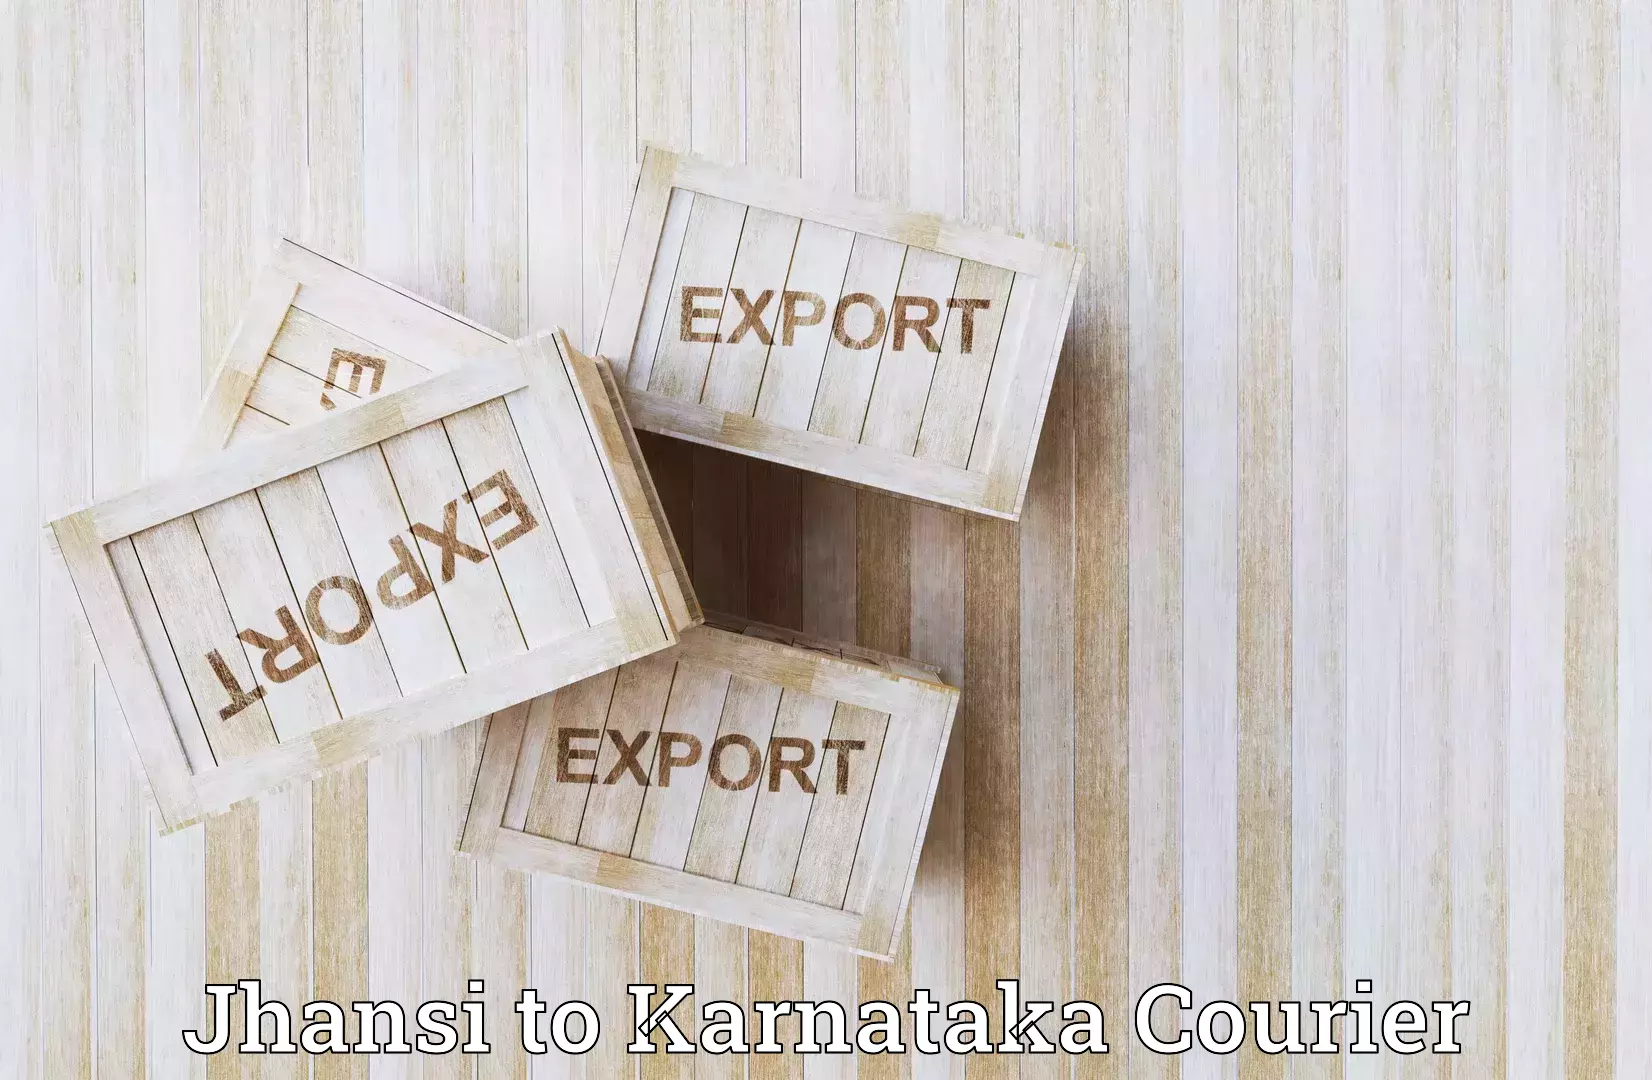 Online package tracking Jhansi to Karnataka